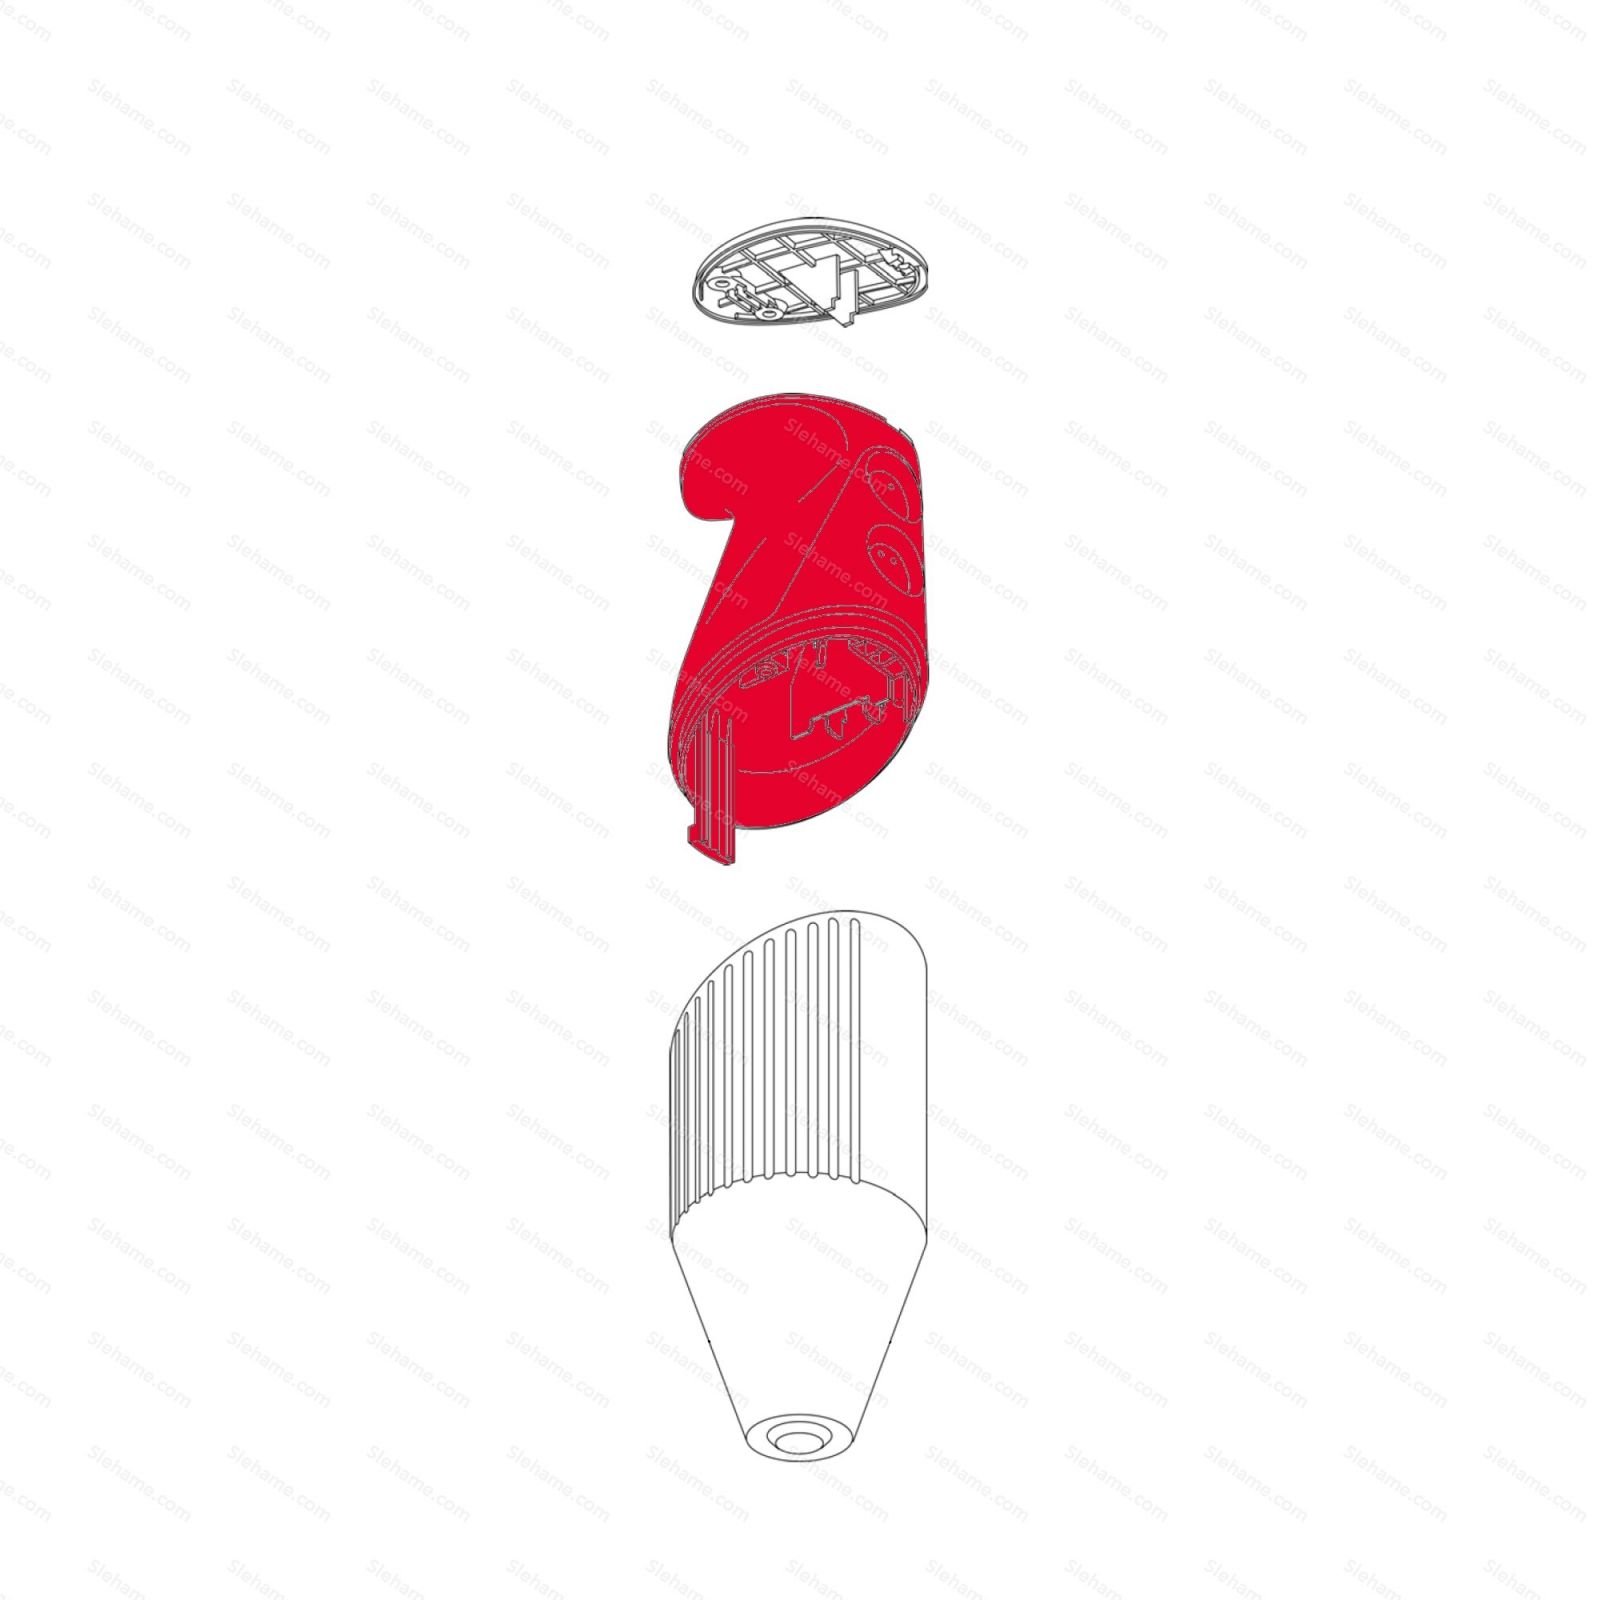 Handle bamix model D, red - illustration